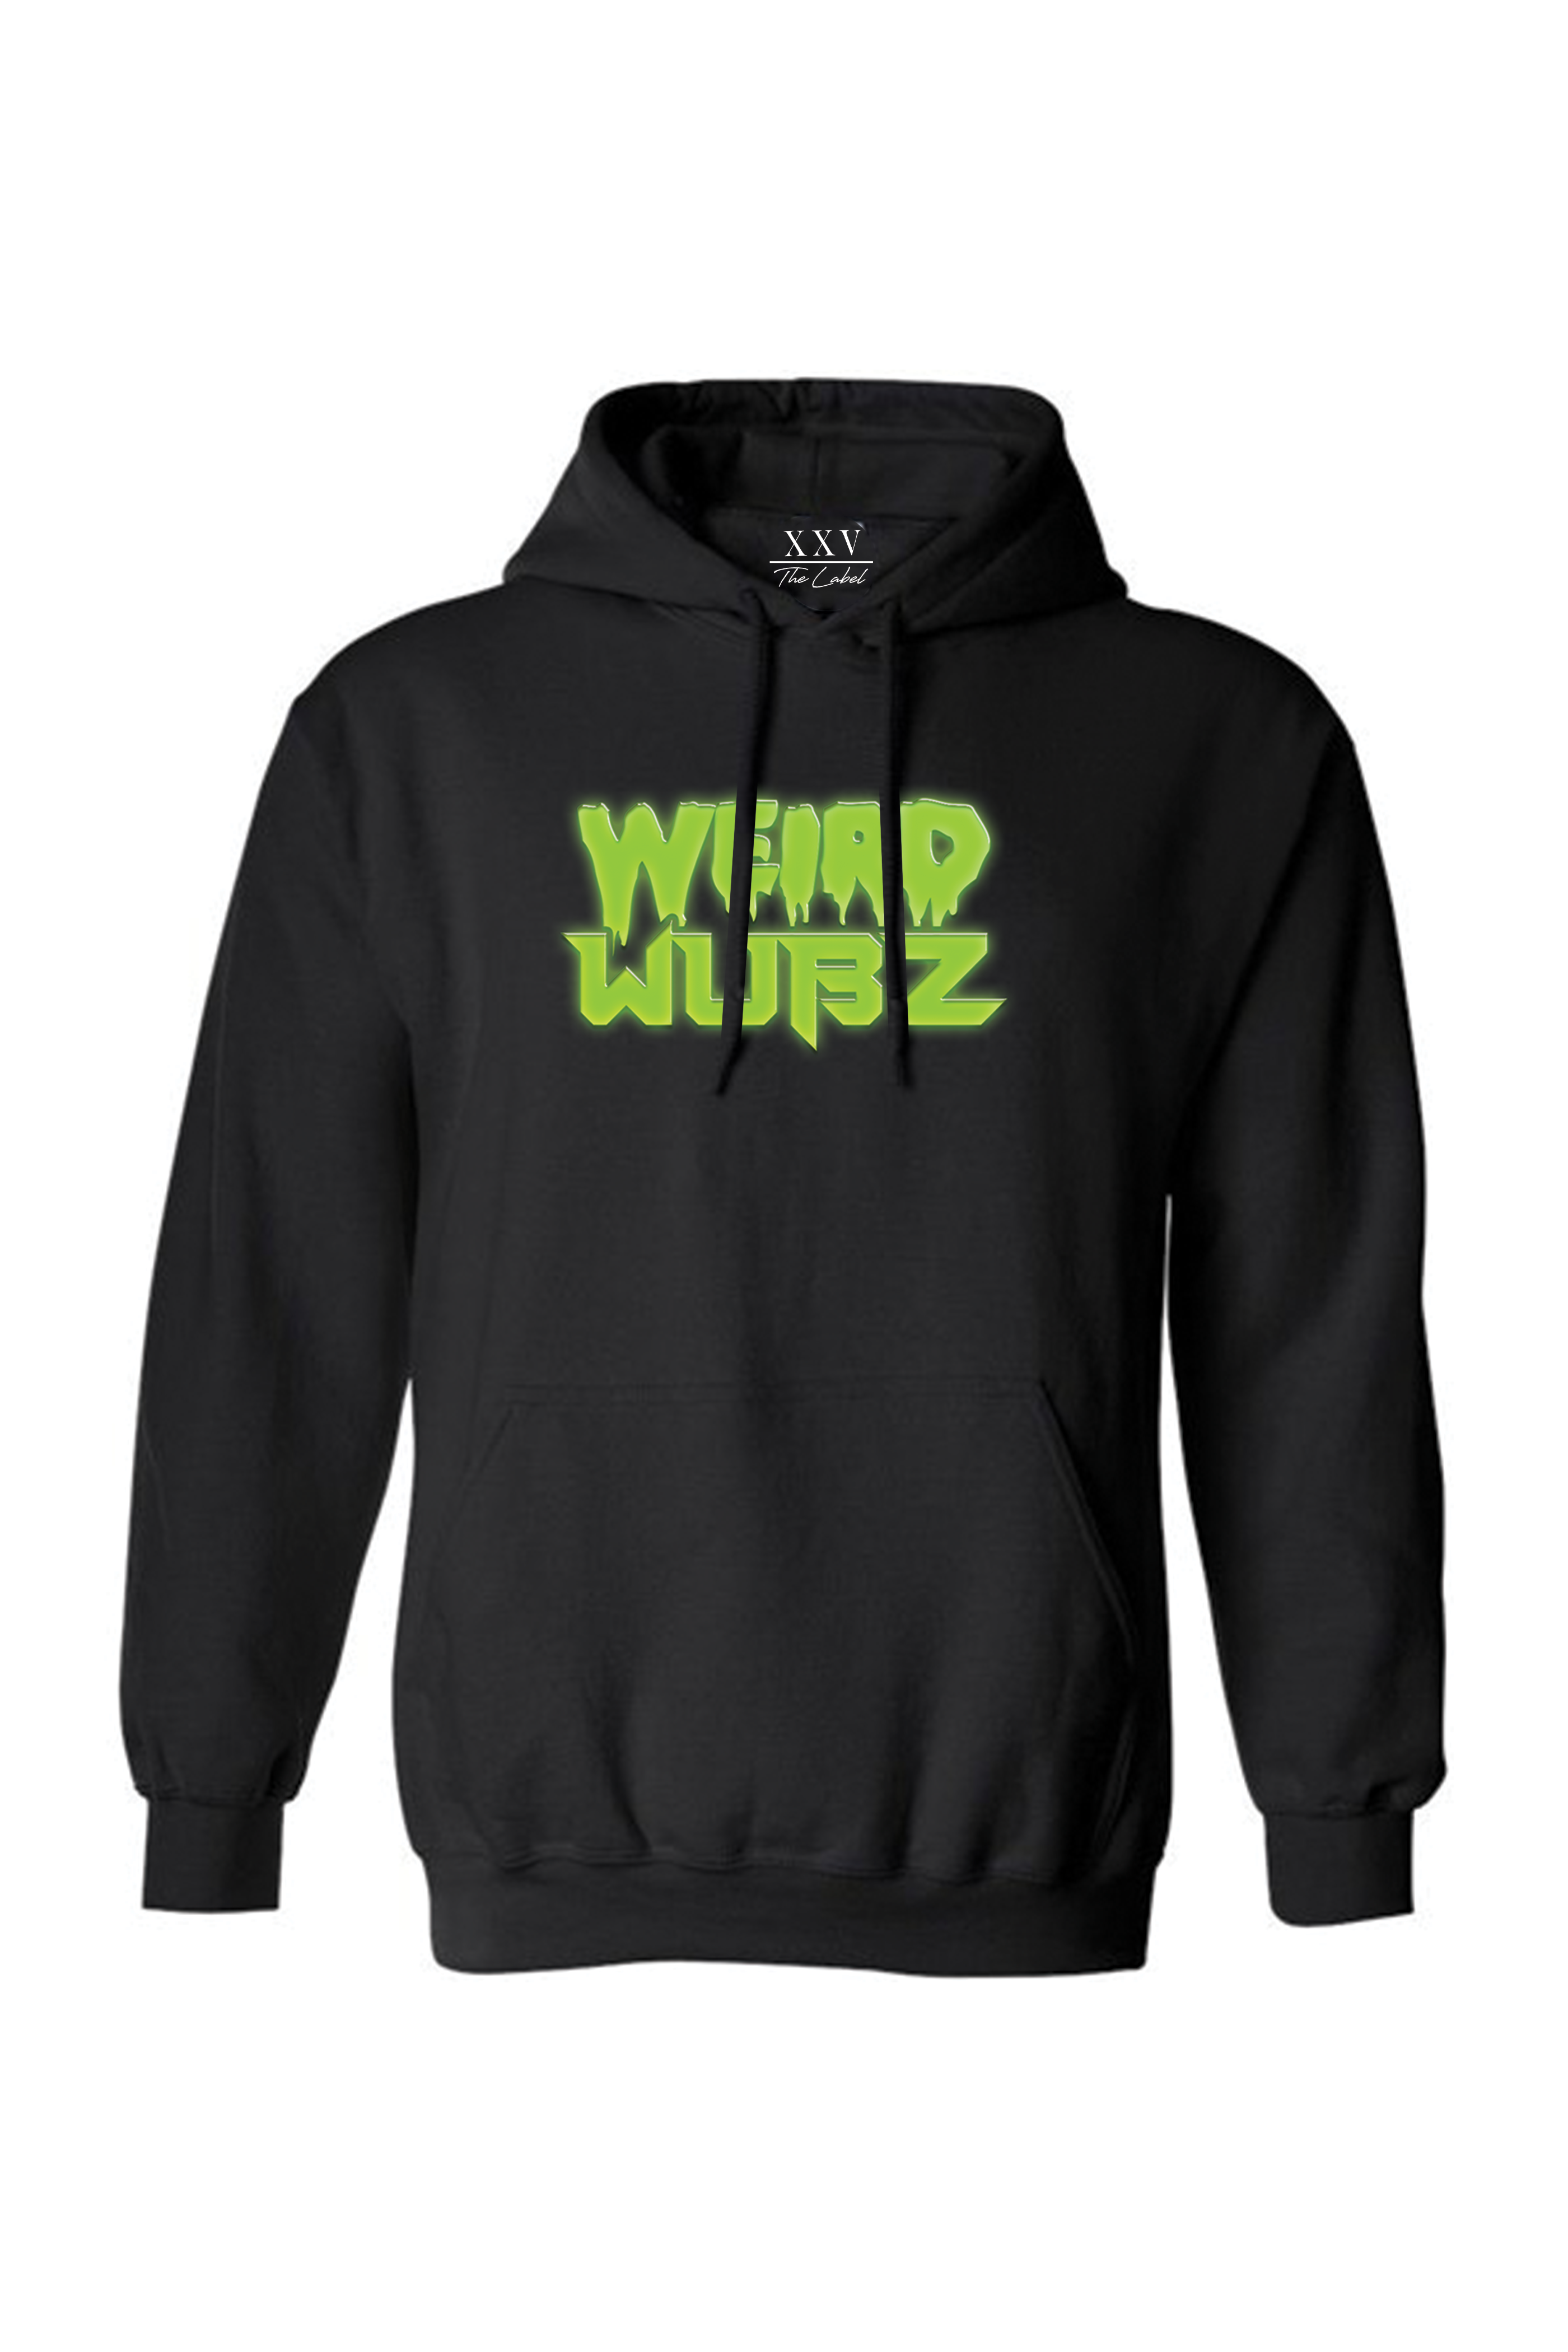 Weird Wubz - Lets Get Weird